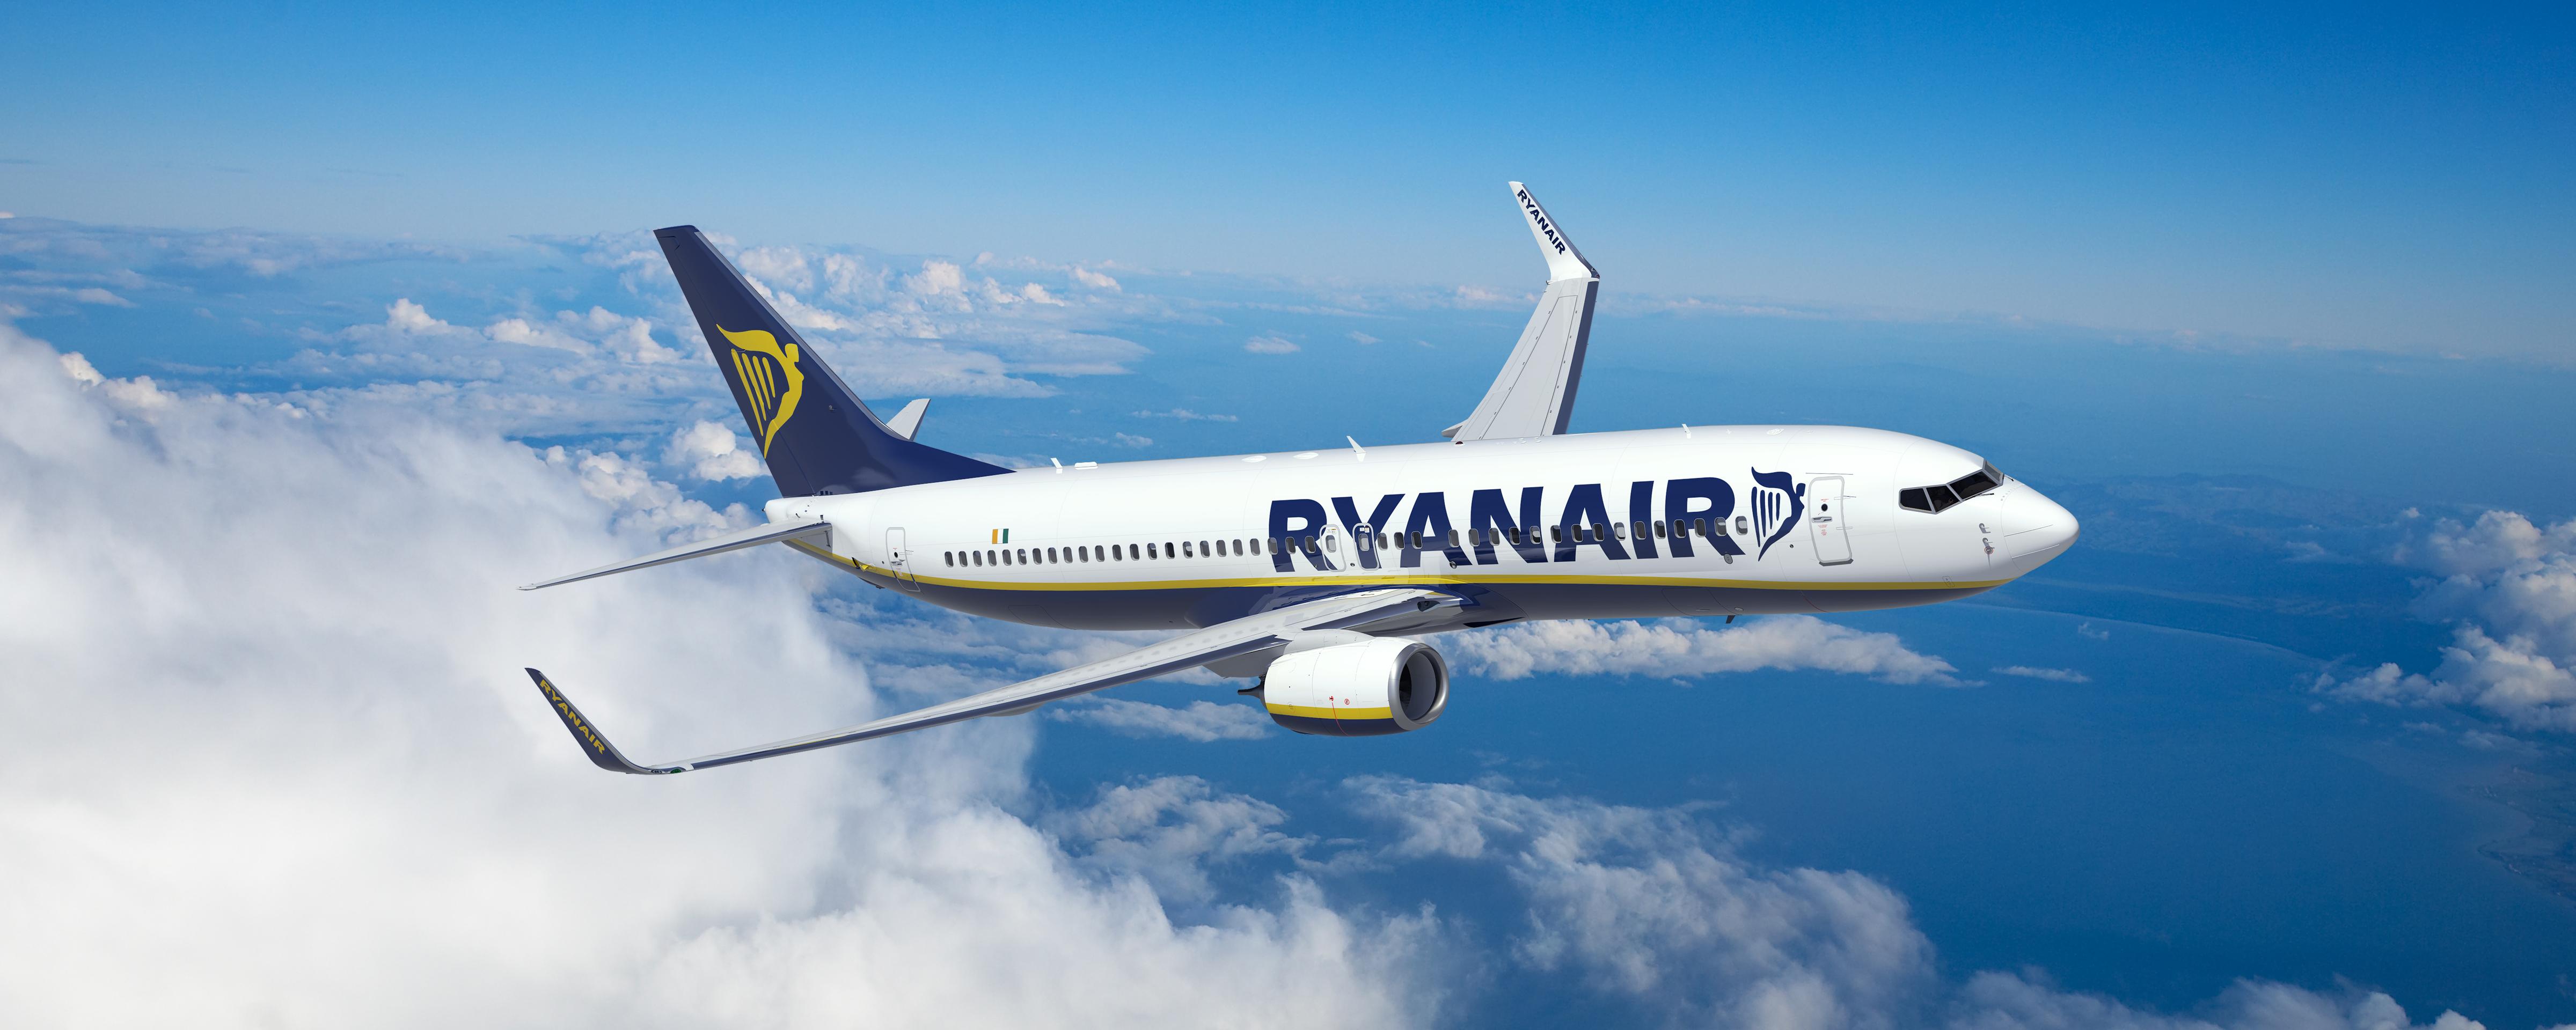 Image Gallery | Ryanair's Corporate Website